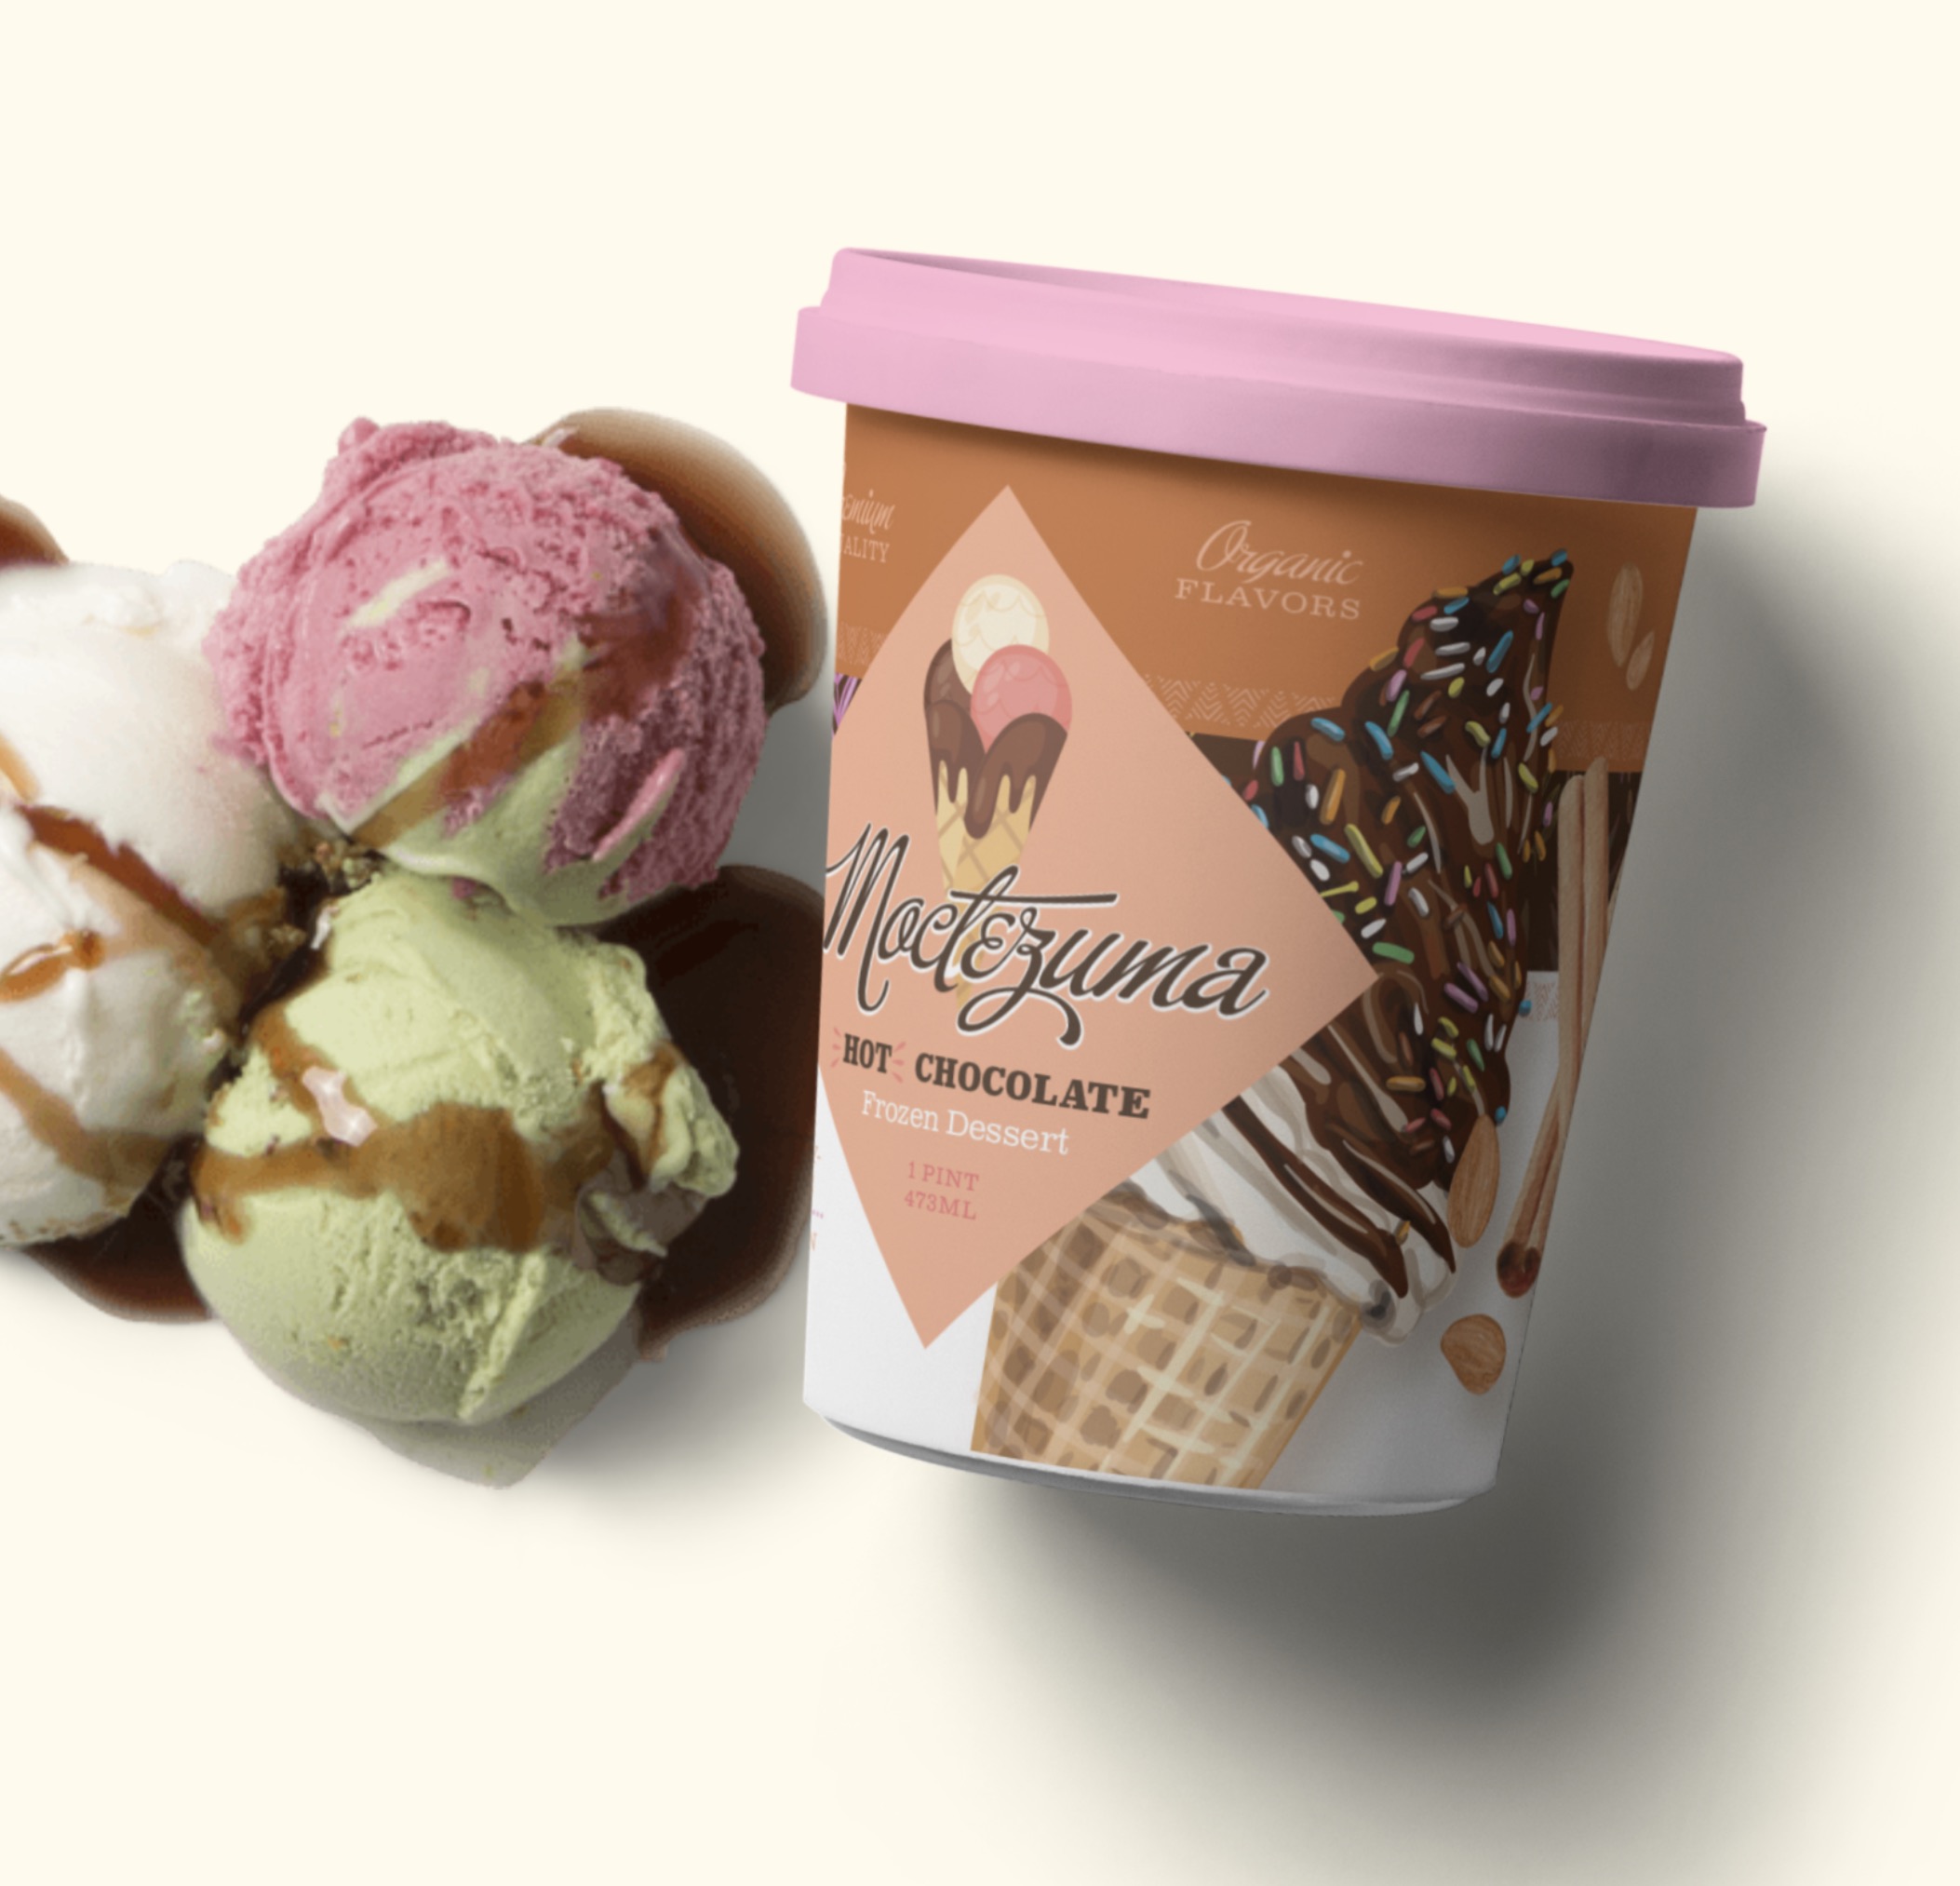 Custom branded Ice Cream packaging design